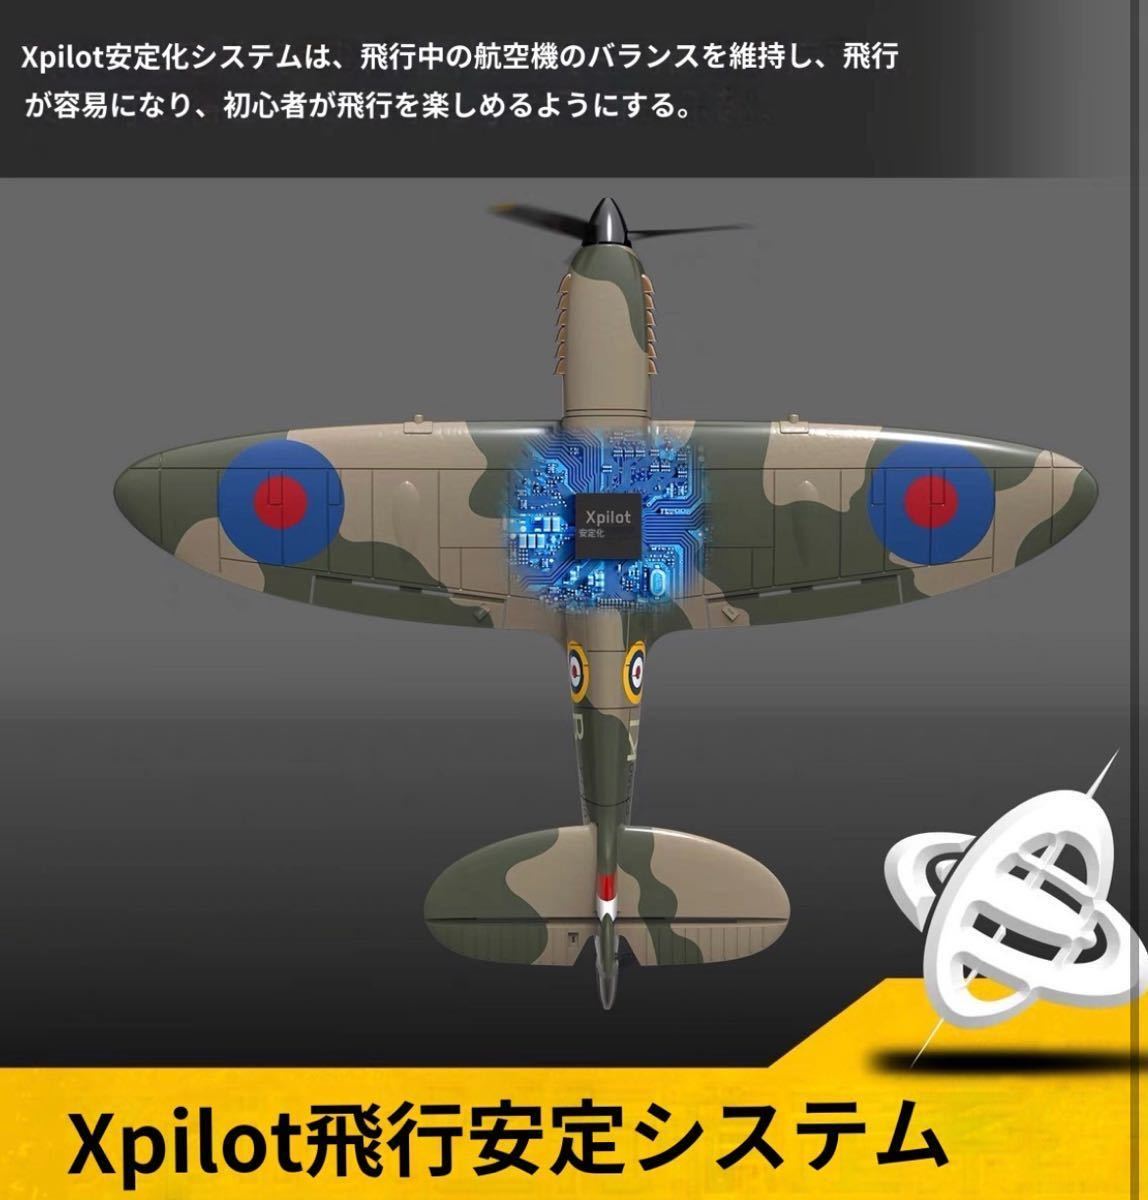 バッテリー3本即飛行 Volantex EACHINE Spitfire 戦闘機 Xpilot搭載 4CH 400mm OpenTX対応  100g以下RCラジコン電動 飛行機 RTF初心者規制外